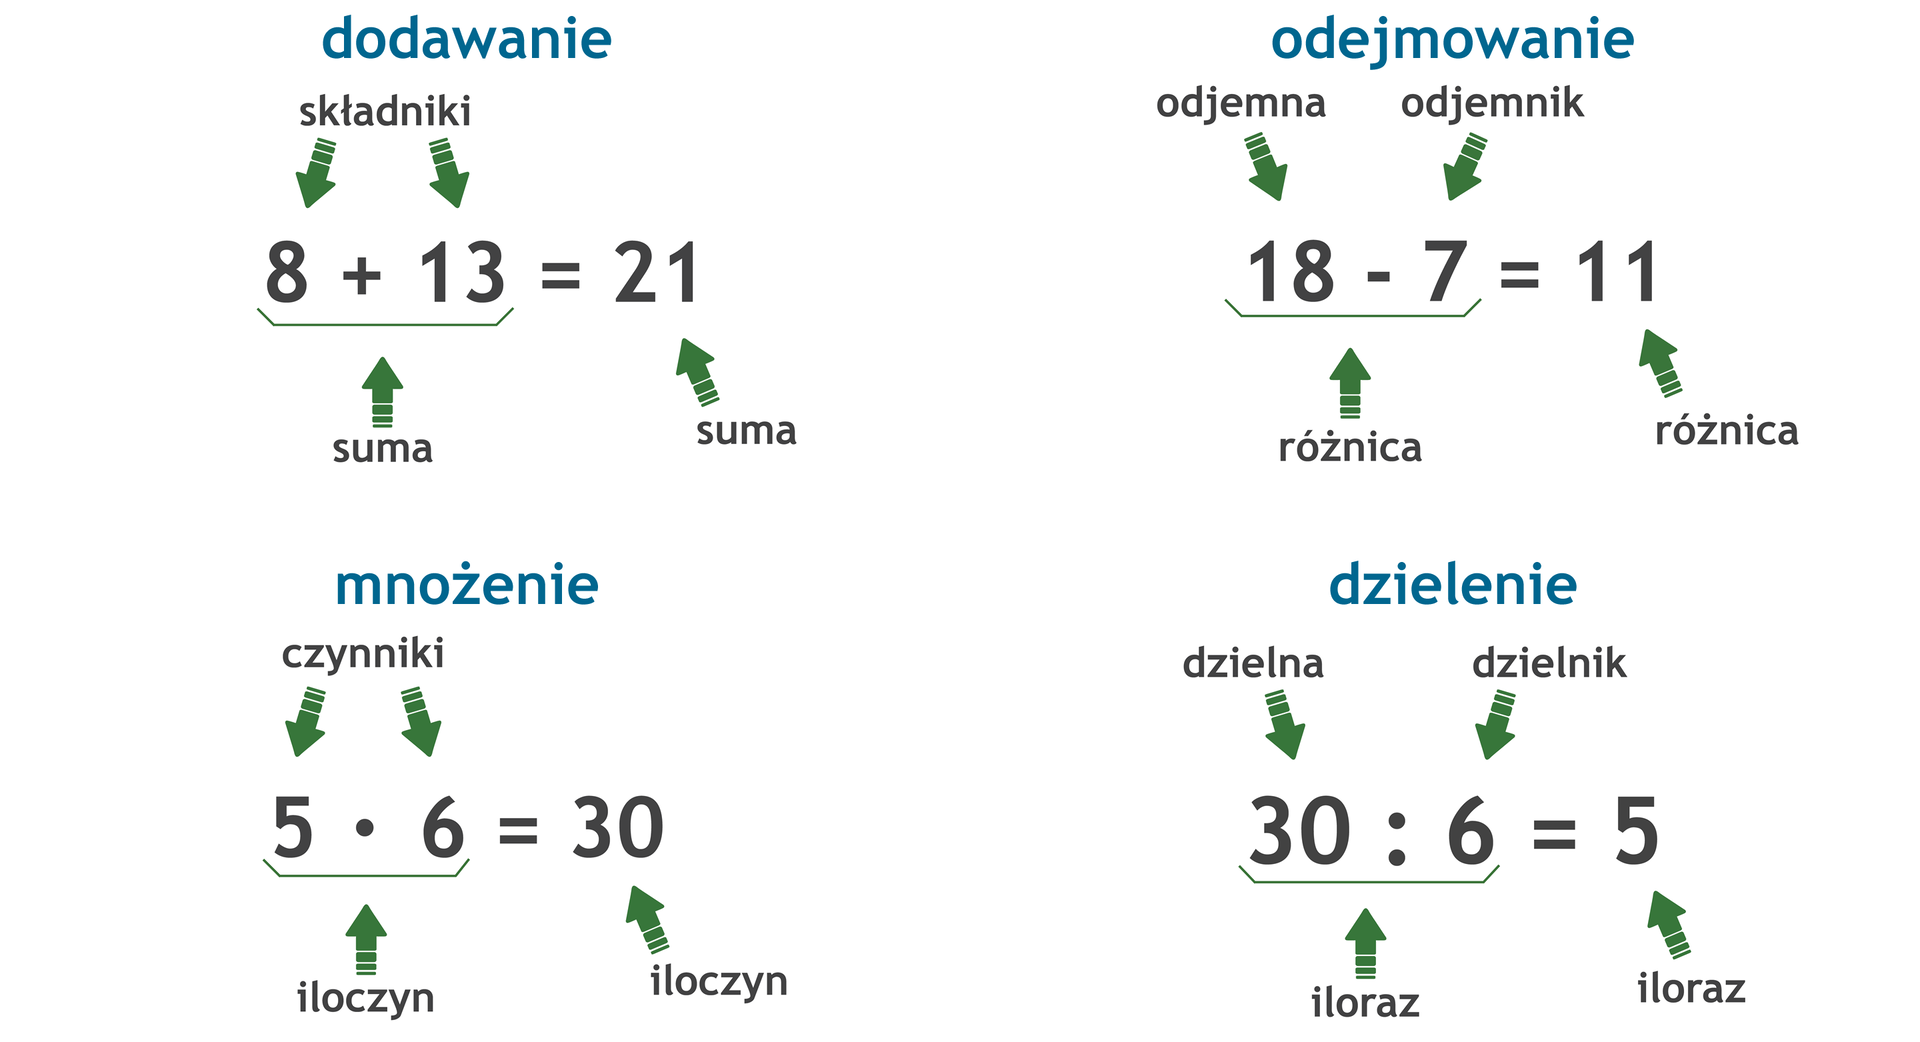 Zapis czterech działań matematycznych. Dodawanie: 8 +13 =21, składnik plus składnik = suma. Odejmowanie: 18 -7 =11, odjemna minus odjemnik = różnica. Mnożenie: 5 razy 6 =30, czynnik razy czynnik = iloczyn. Dzielenie: 30 dzielone przez 6 =5, dzielna dzielona przez dzielnik = iloraz.